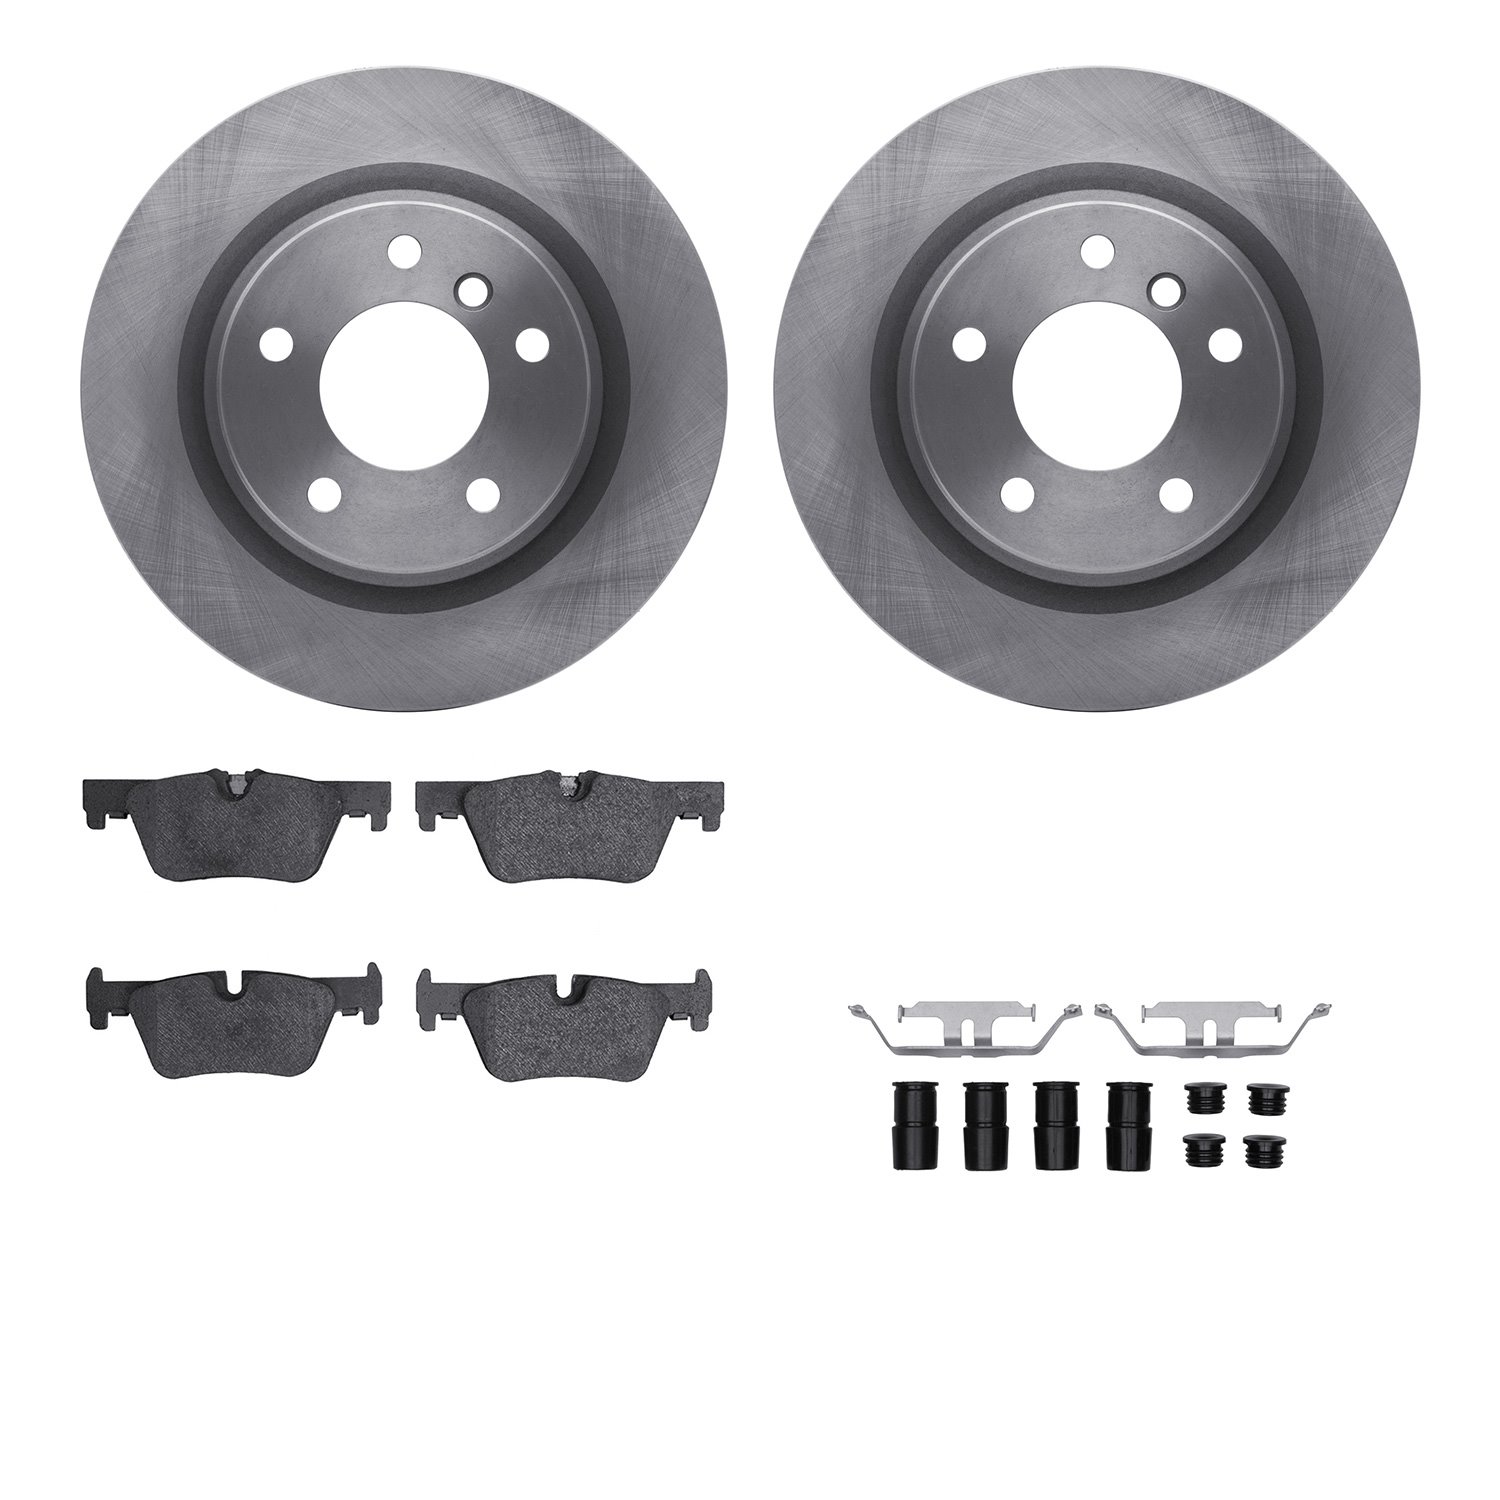 6612-31392 Brake Rotors w/5000 Euro Ceramic Brake Pads Kit with Hardware, 2012-2021 BMW, Position: Rear